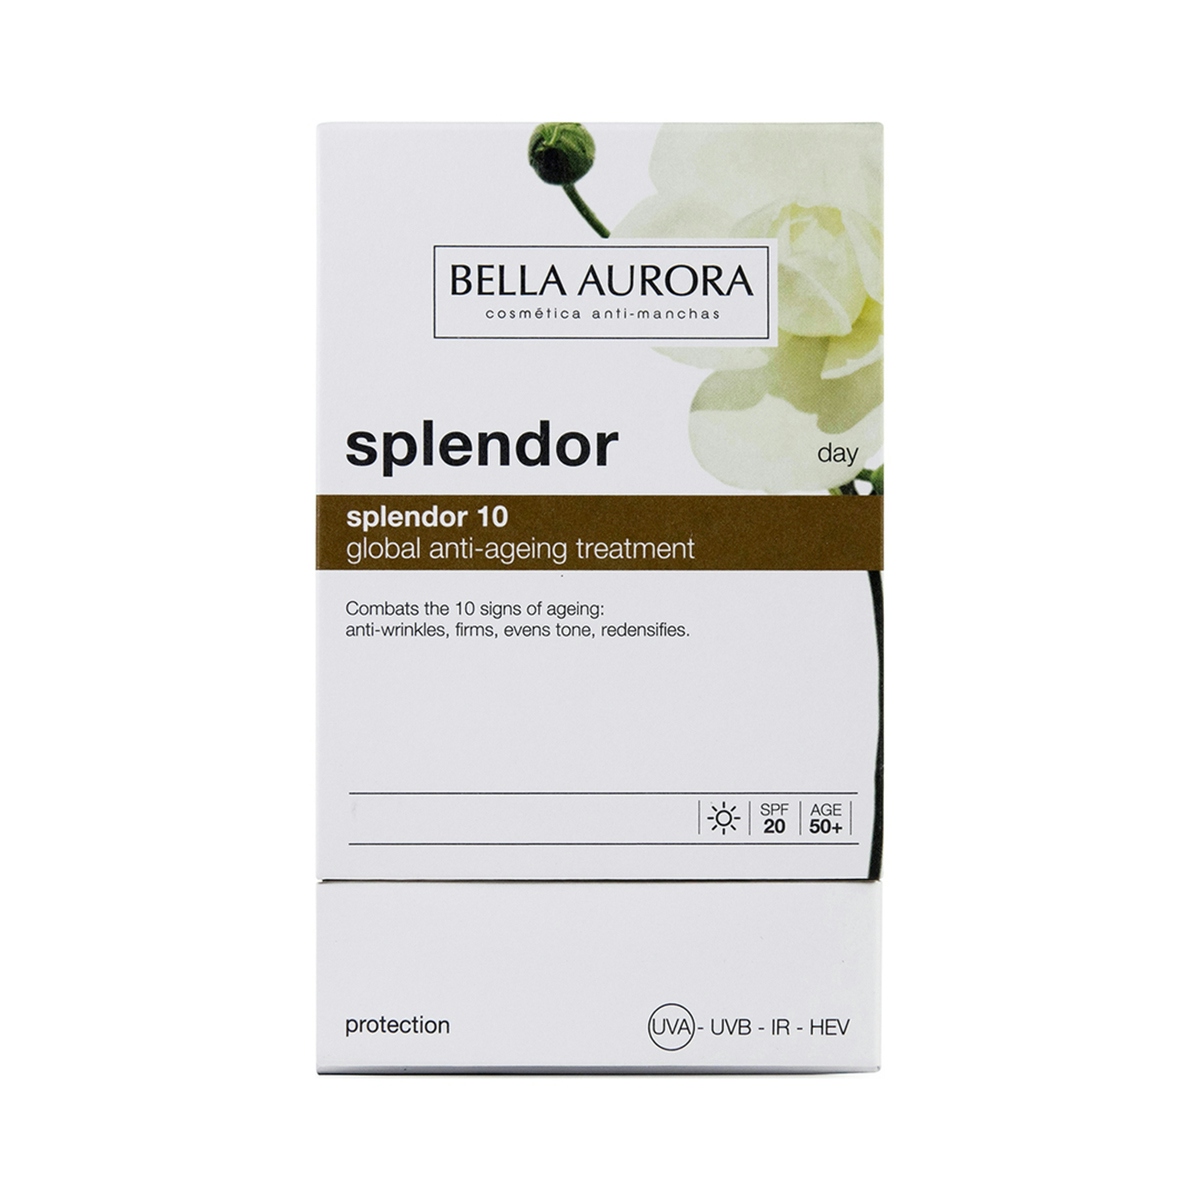 Crema de día Splendor 10 antiedad y anti manchas BELLA AURORA 50 ml